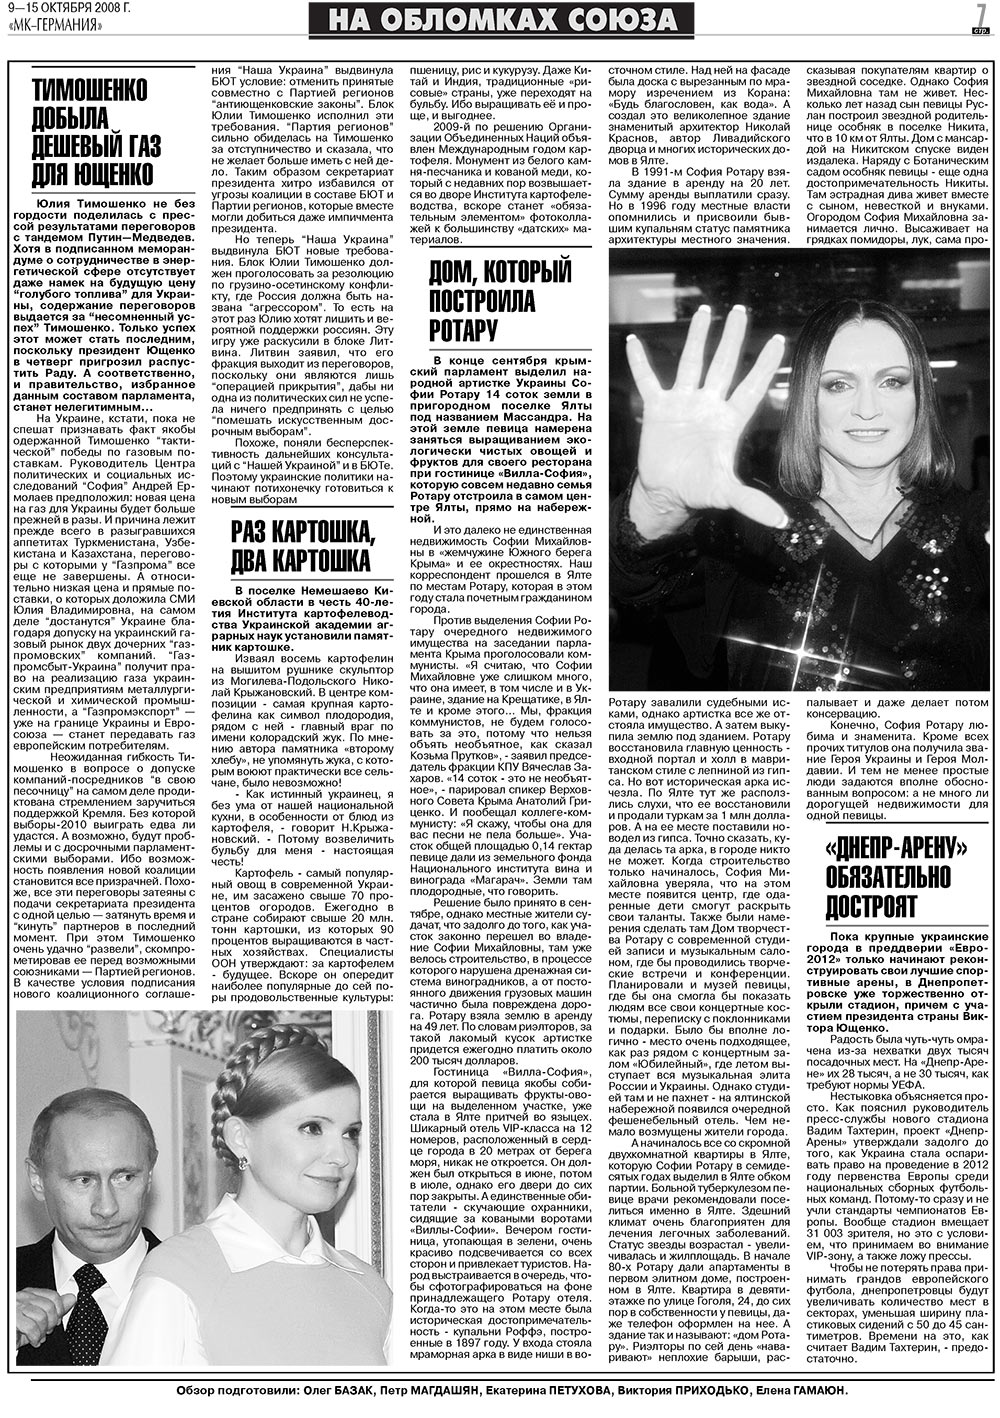 МК-Германия (газета). 2008 год, номер 41, стр. 7